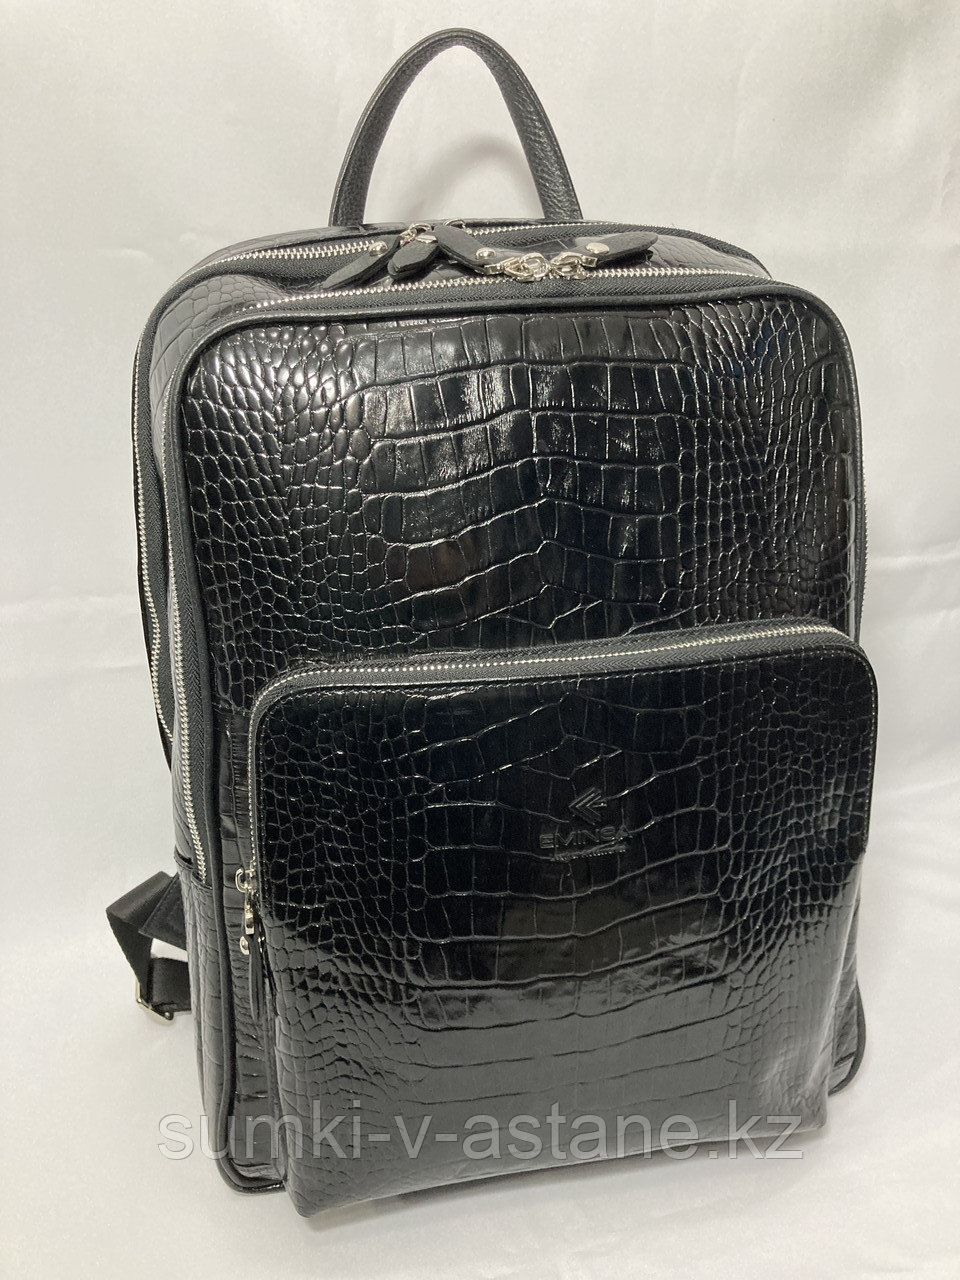 Мужской рюкзак из кожи "EMINSA". Высота 42 см, ширина 30 см, глубина 14 см.